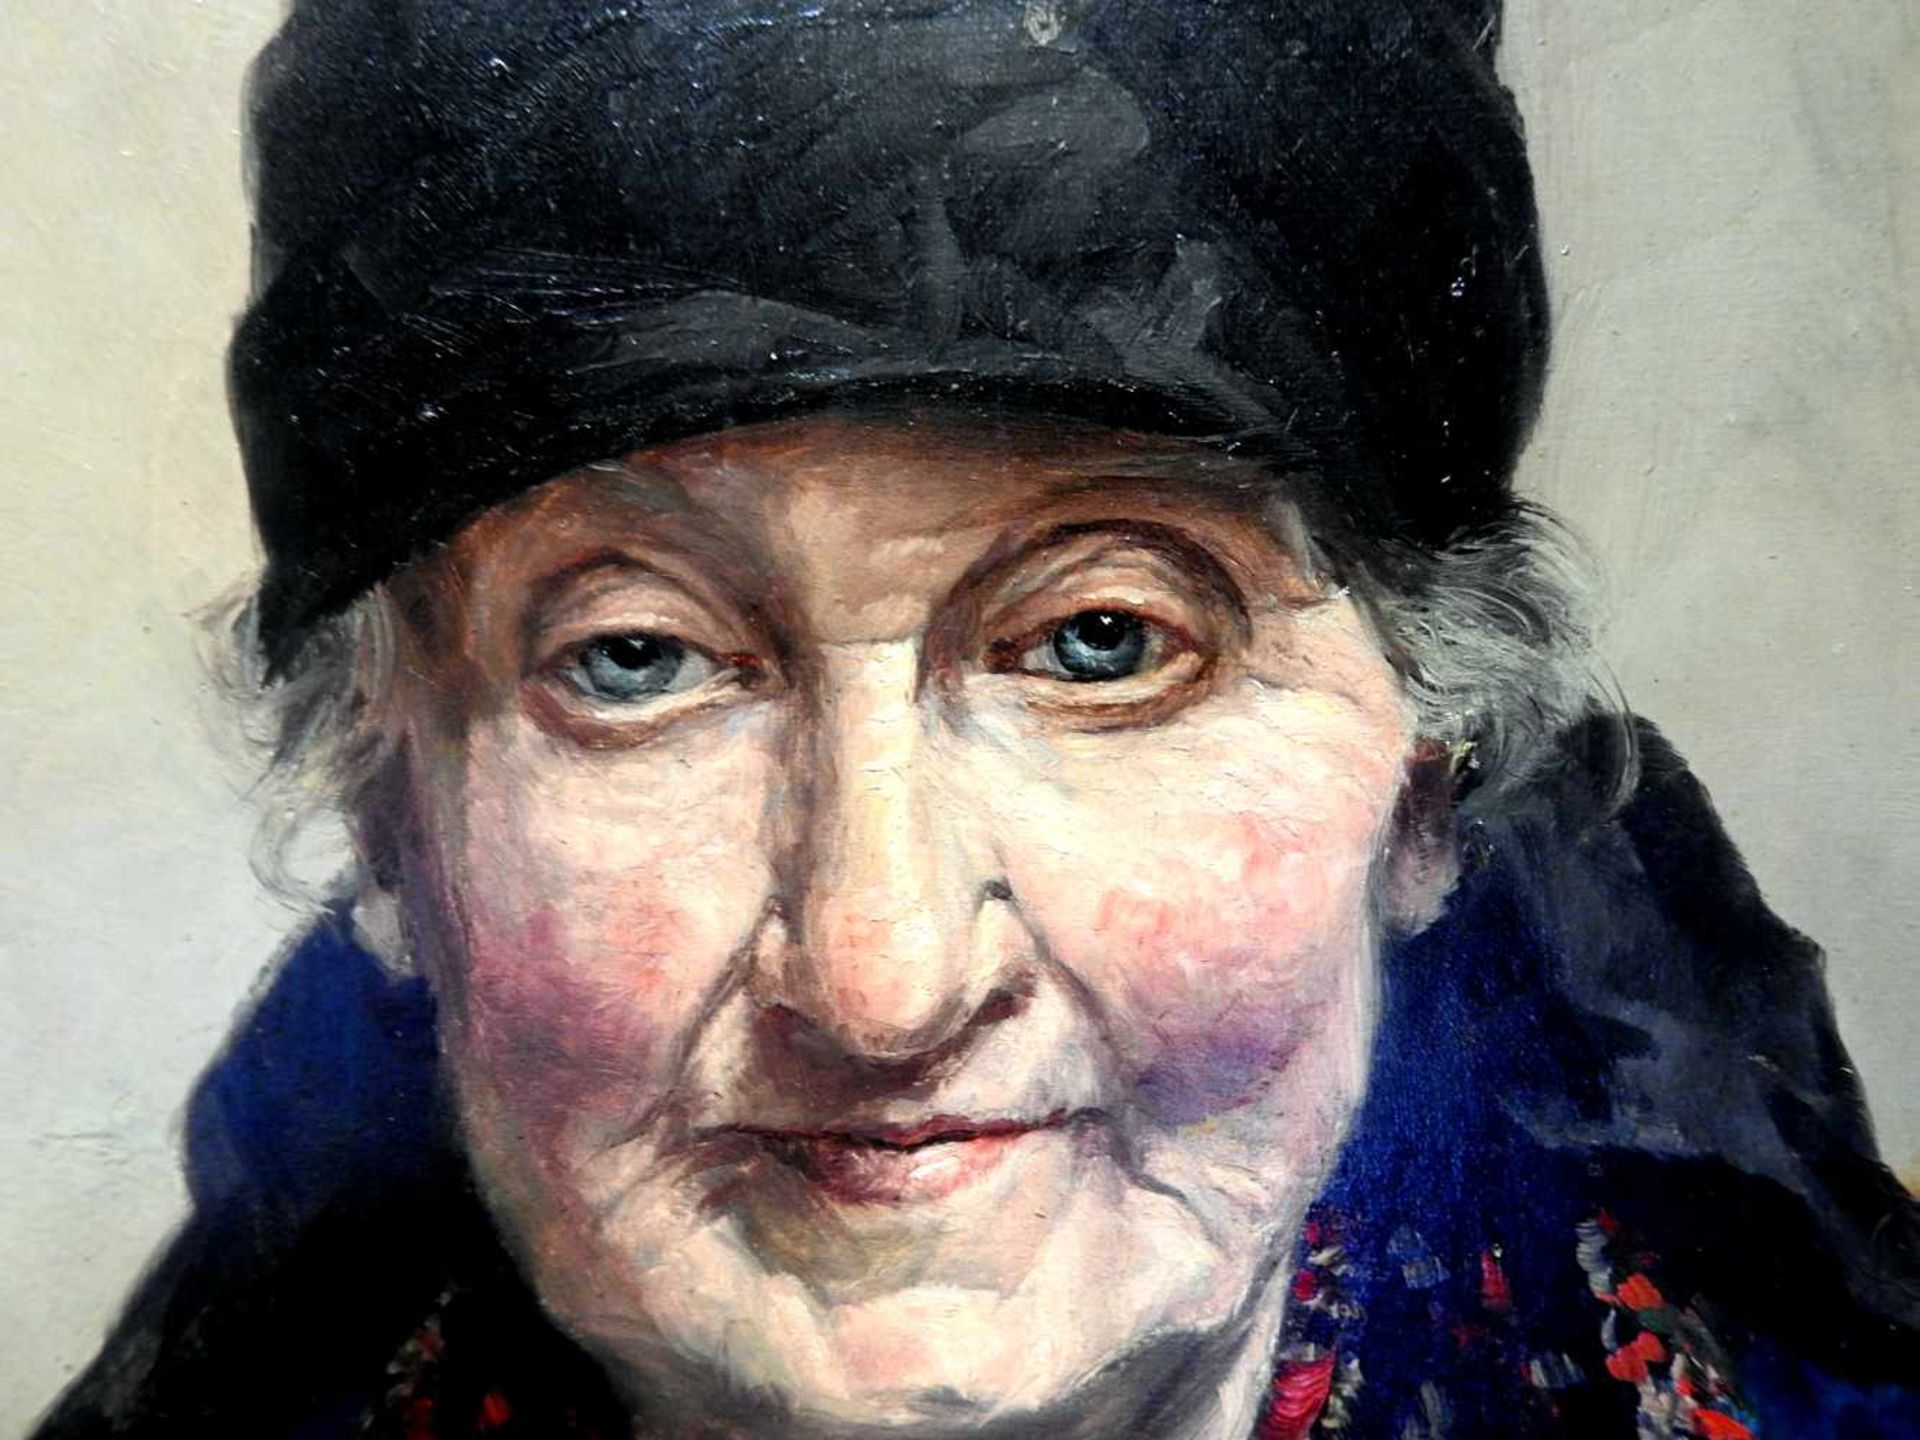 BriefschreiberinÖl/Holz. Dargestellt ist eine alte Frau in einem farbenprächtigen Ge - Image 2 of 6